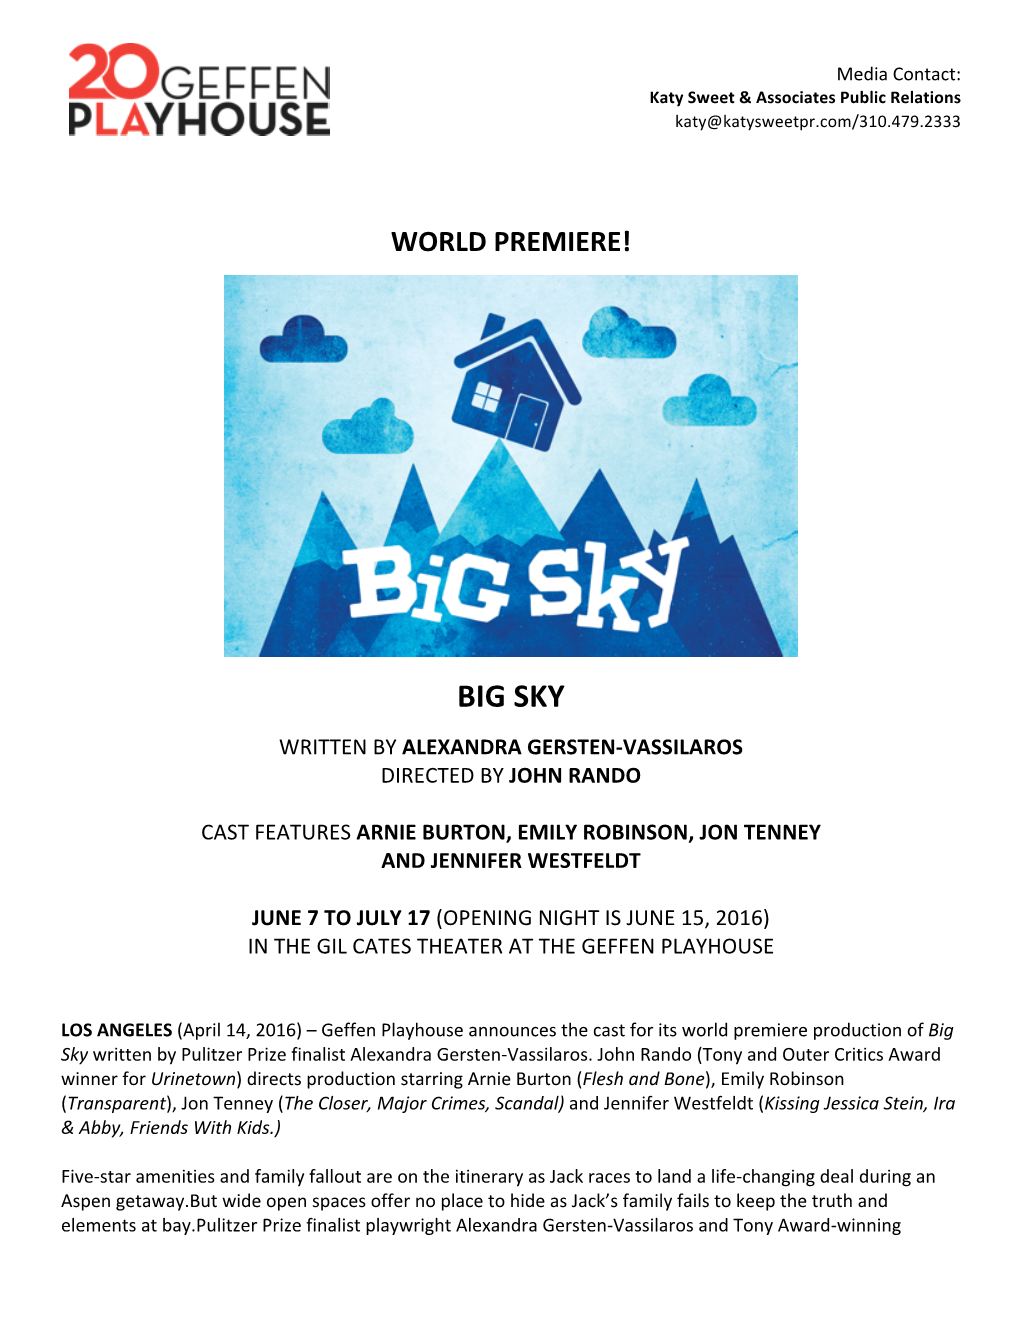 Big Sky Written by Alexandra Gersten-Vassilaros Directed by John Rando